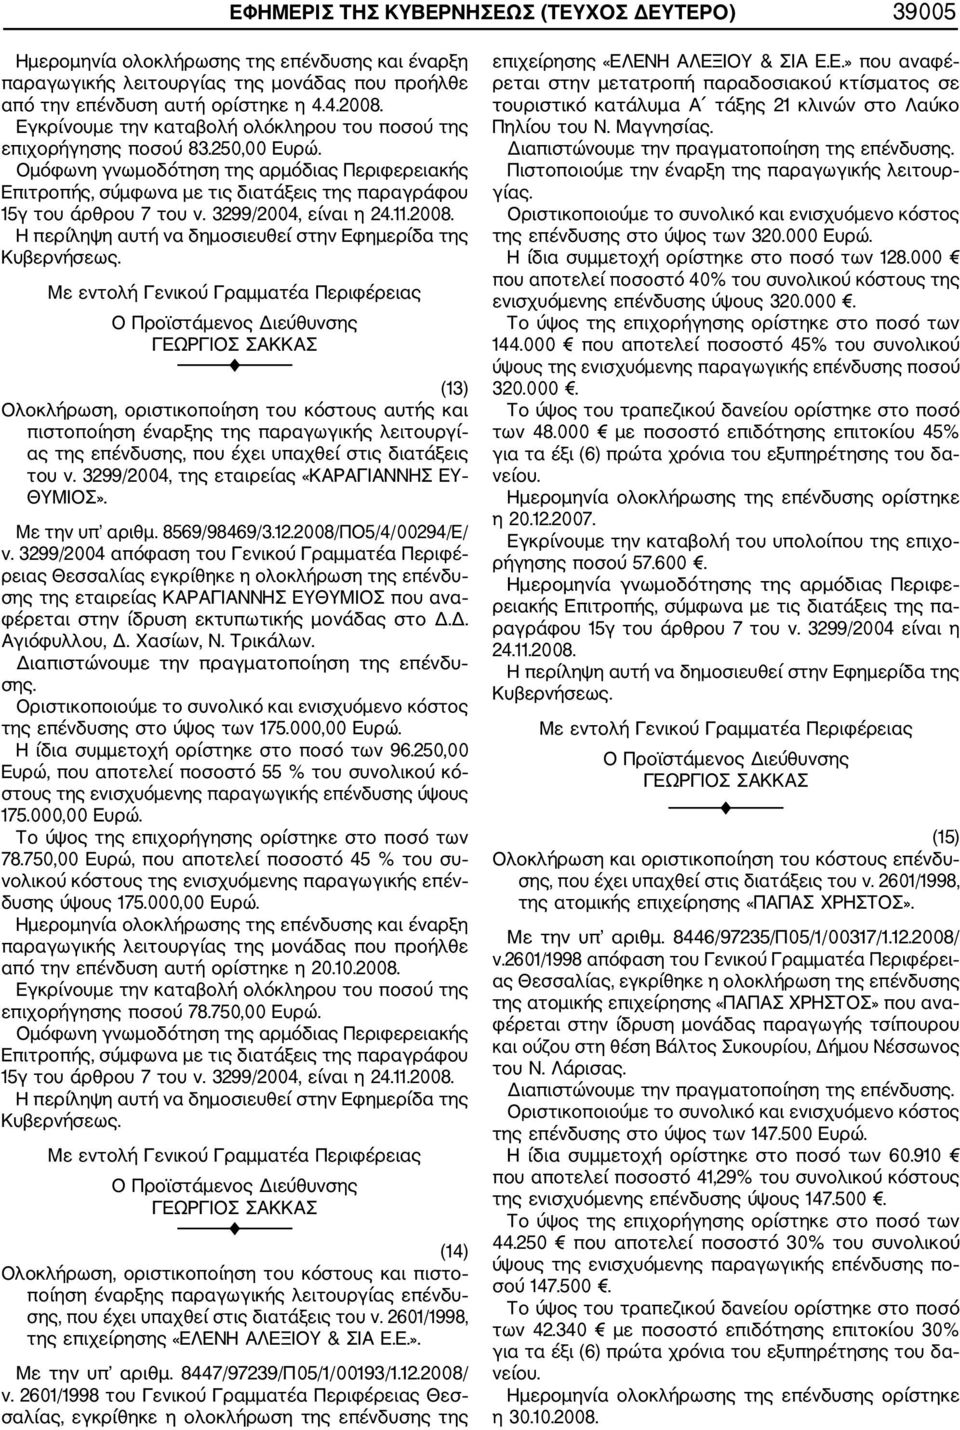 2008/ΠΟ5/4/00294/Ε/ ρειας Θεσσαλίας εγκρίθηκε η ολοκλήρωση της επένδυ σης της εταιρείας ΚΑΡΑΓΙΑΝΝΗΣ ΕΥΘΥΜΙΟΣ που ανα φέρεται στην ίδρυση εκτυπωτικής μονάδας στο Δ.Δ. Αγιόφυλλου, Δ. Χασίων, Ν.